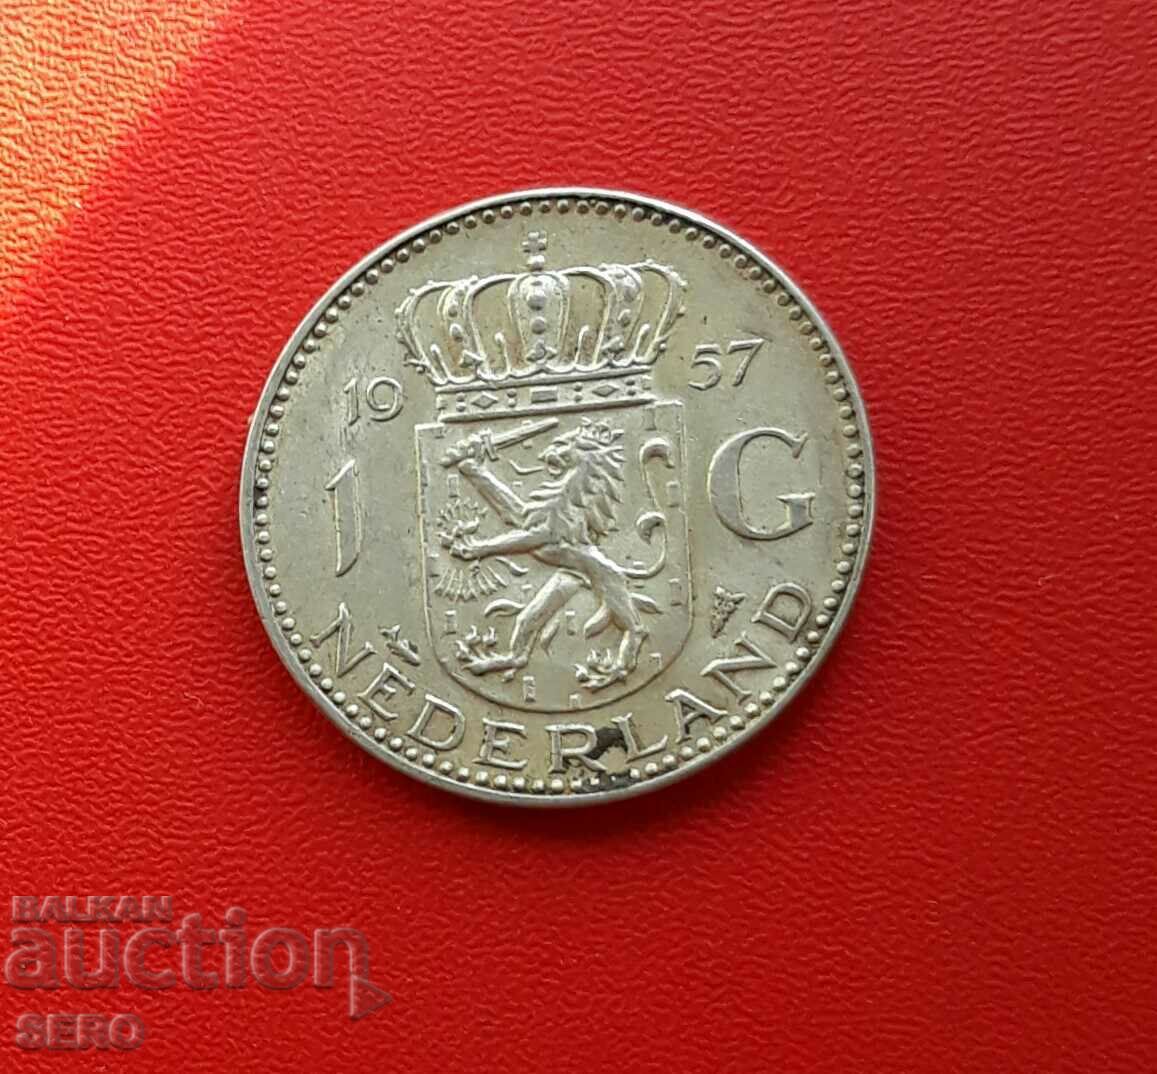 Netherlands-1 guilder 1957